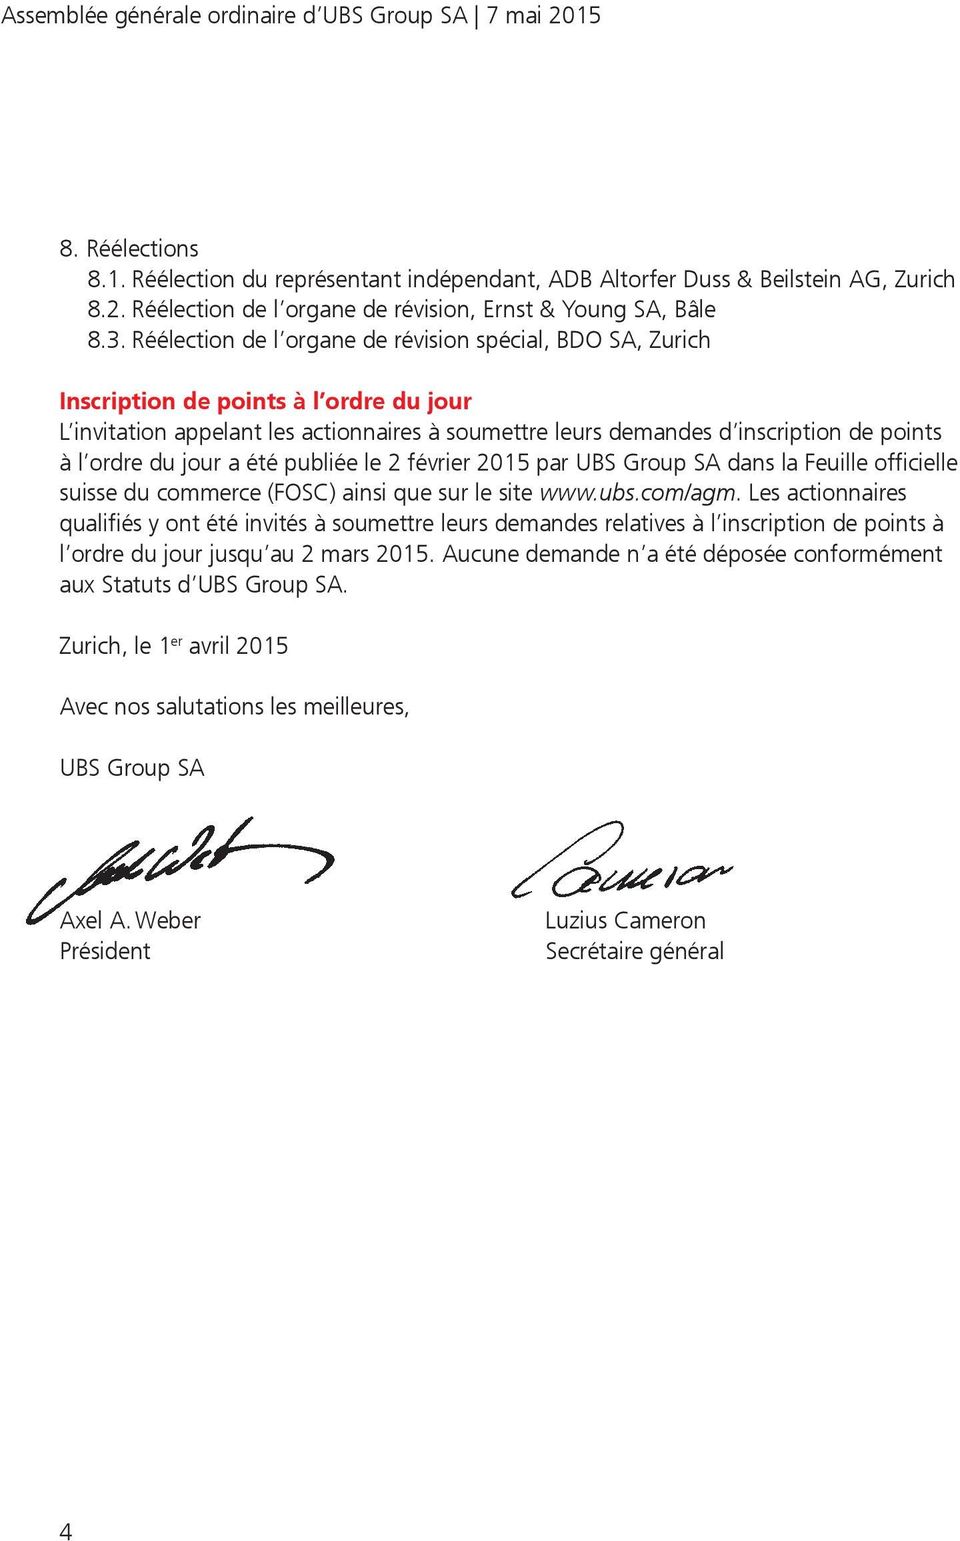 ordre du jour a été publiée le 2 février 2015 par UBS Group SA dans la Feuille officielle suisse du commerce (FOSC) ainsi que sur le site www.ubs.com/agm.